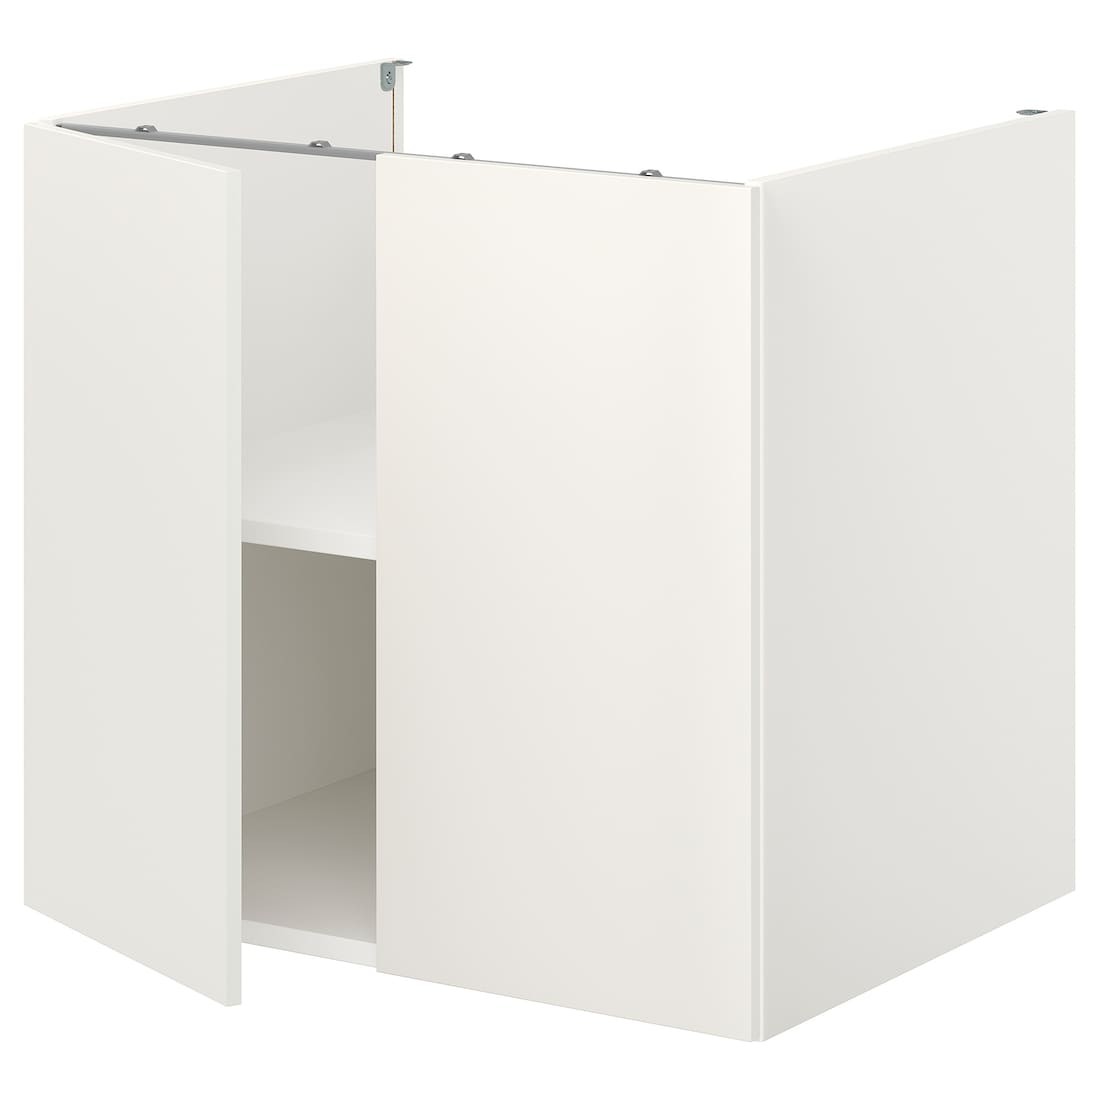 IKEA ENHET ЭНХЕТ Напольный шкаф с полкой / дверью, белый, 80x62x75 см 09321006 093.210.06